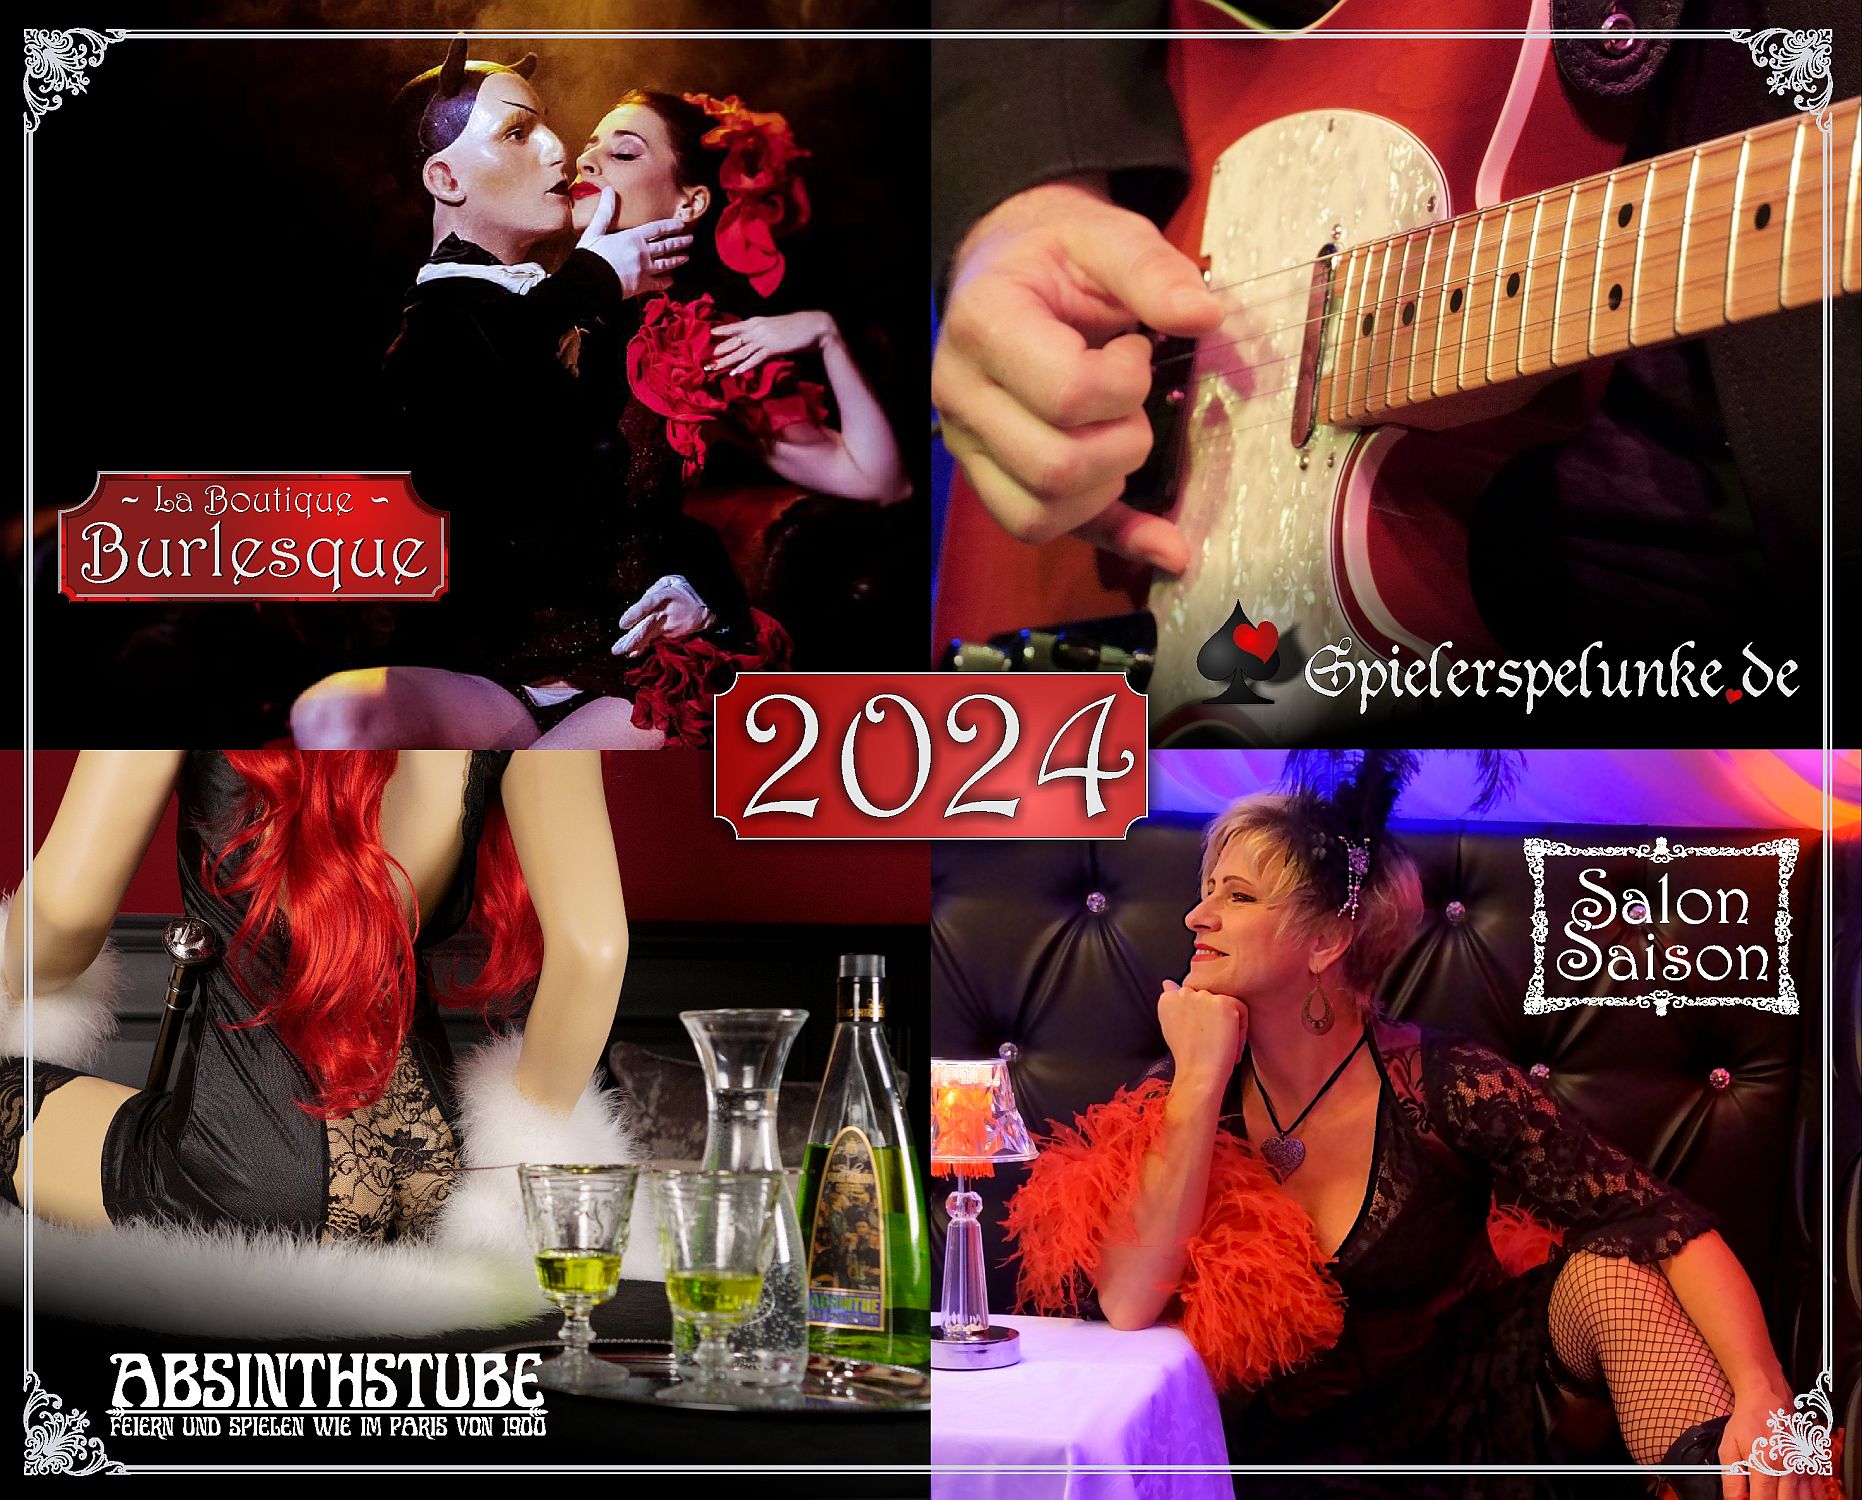 Veranstaltungen in der Spielerspelunke der Absinthstube und der Boutique Burlesque 2024